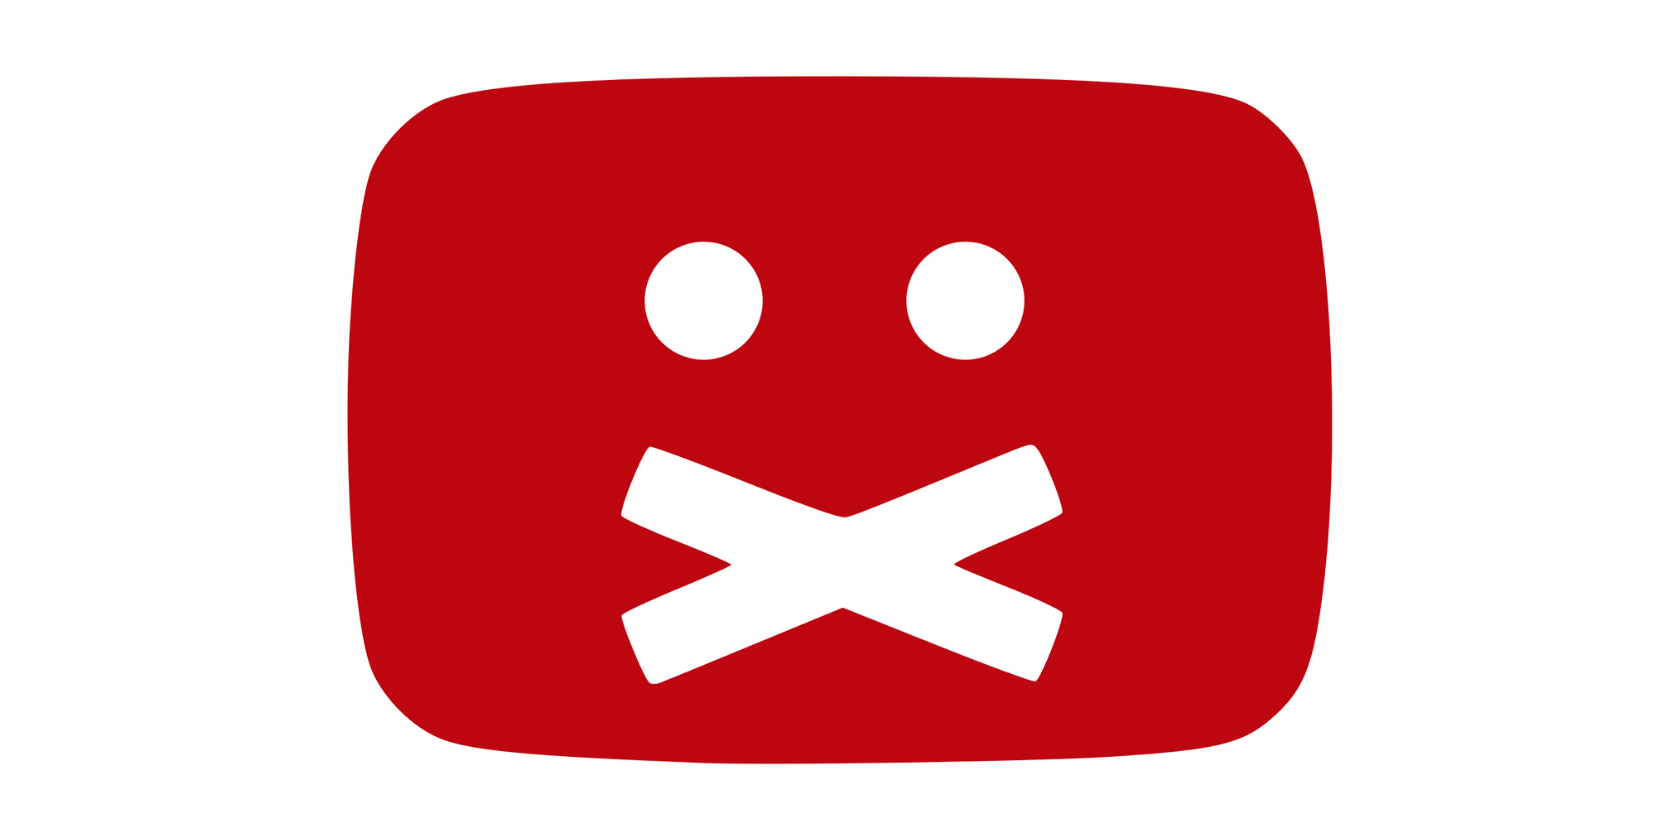 Censorship emoticon on YouTube logo